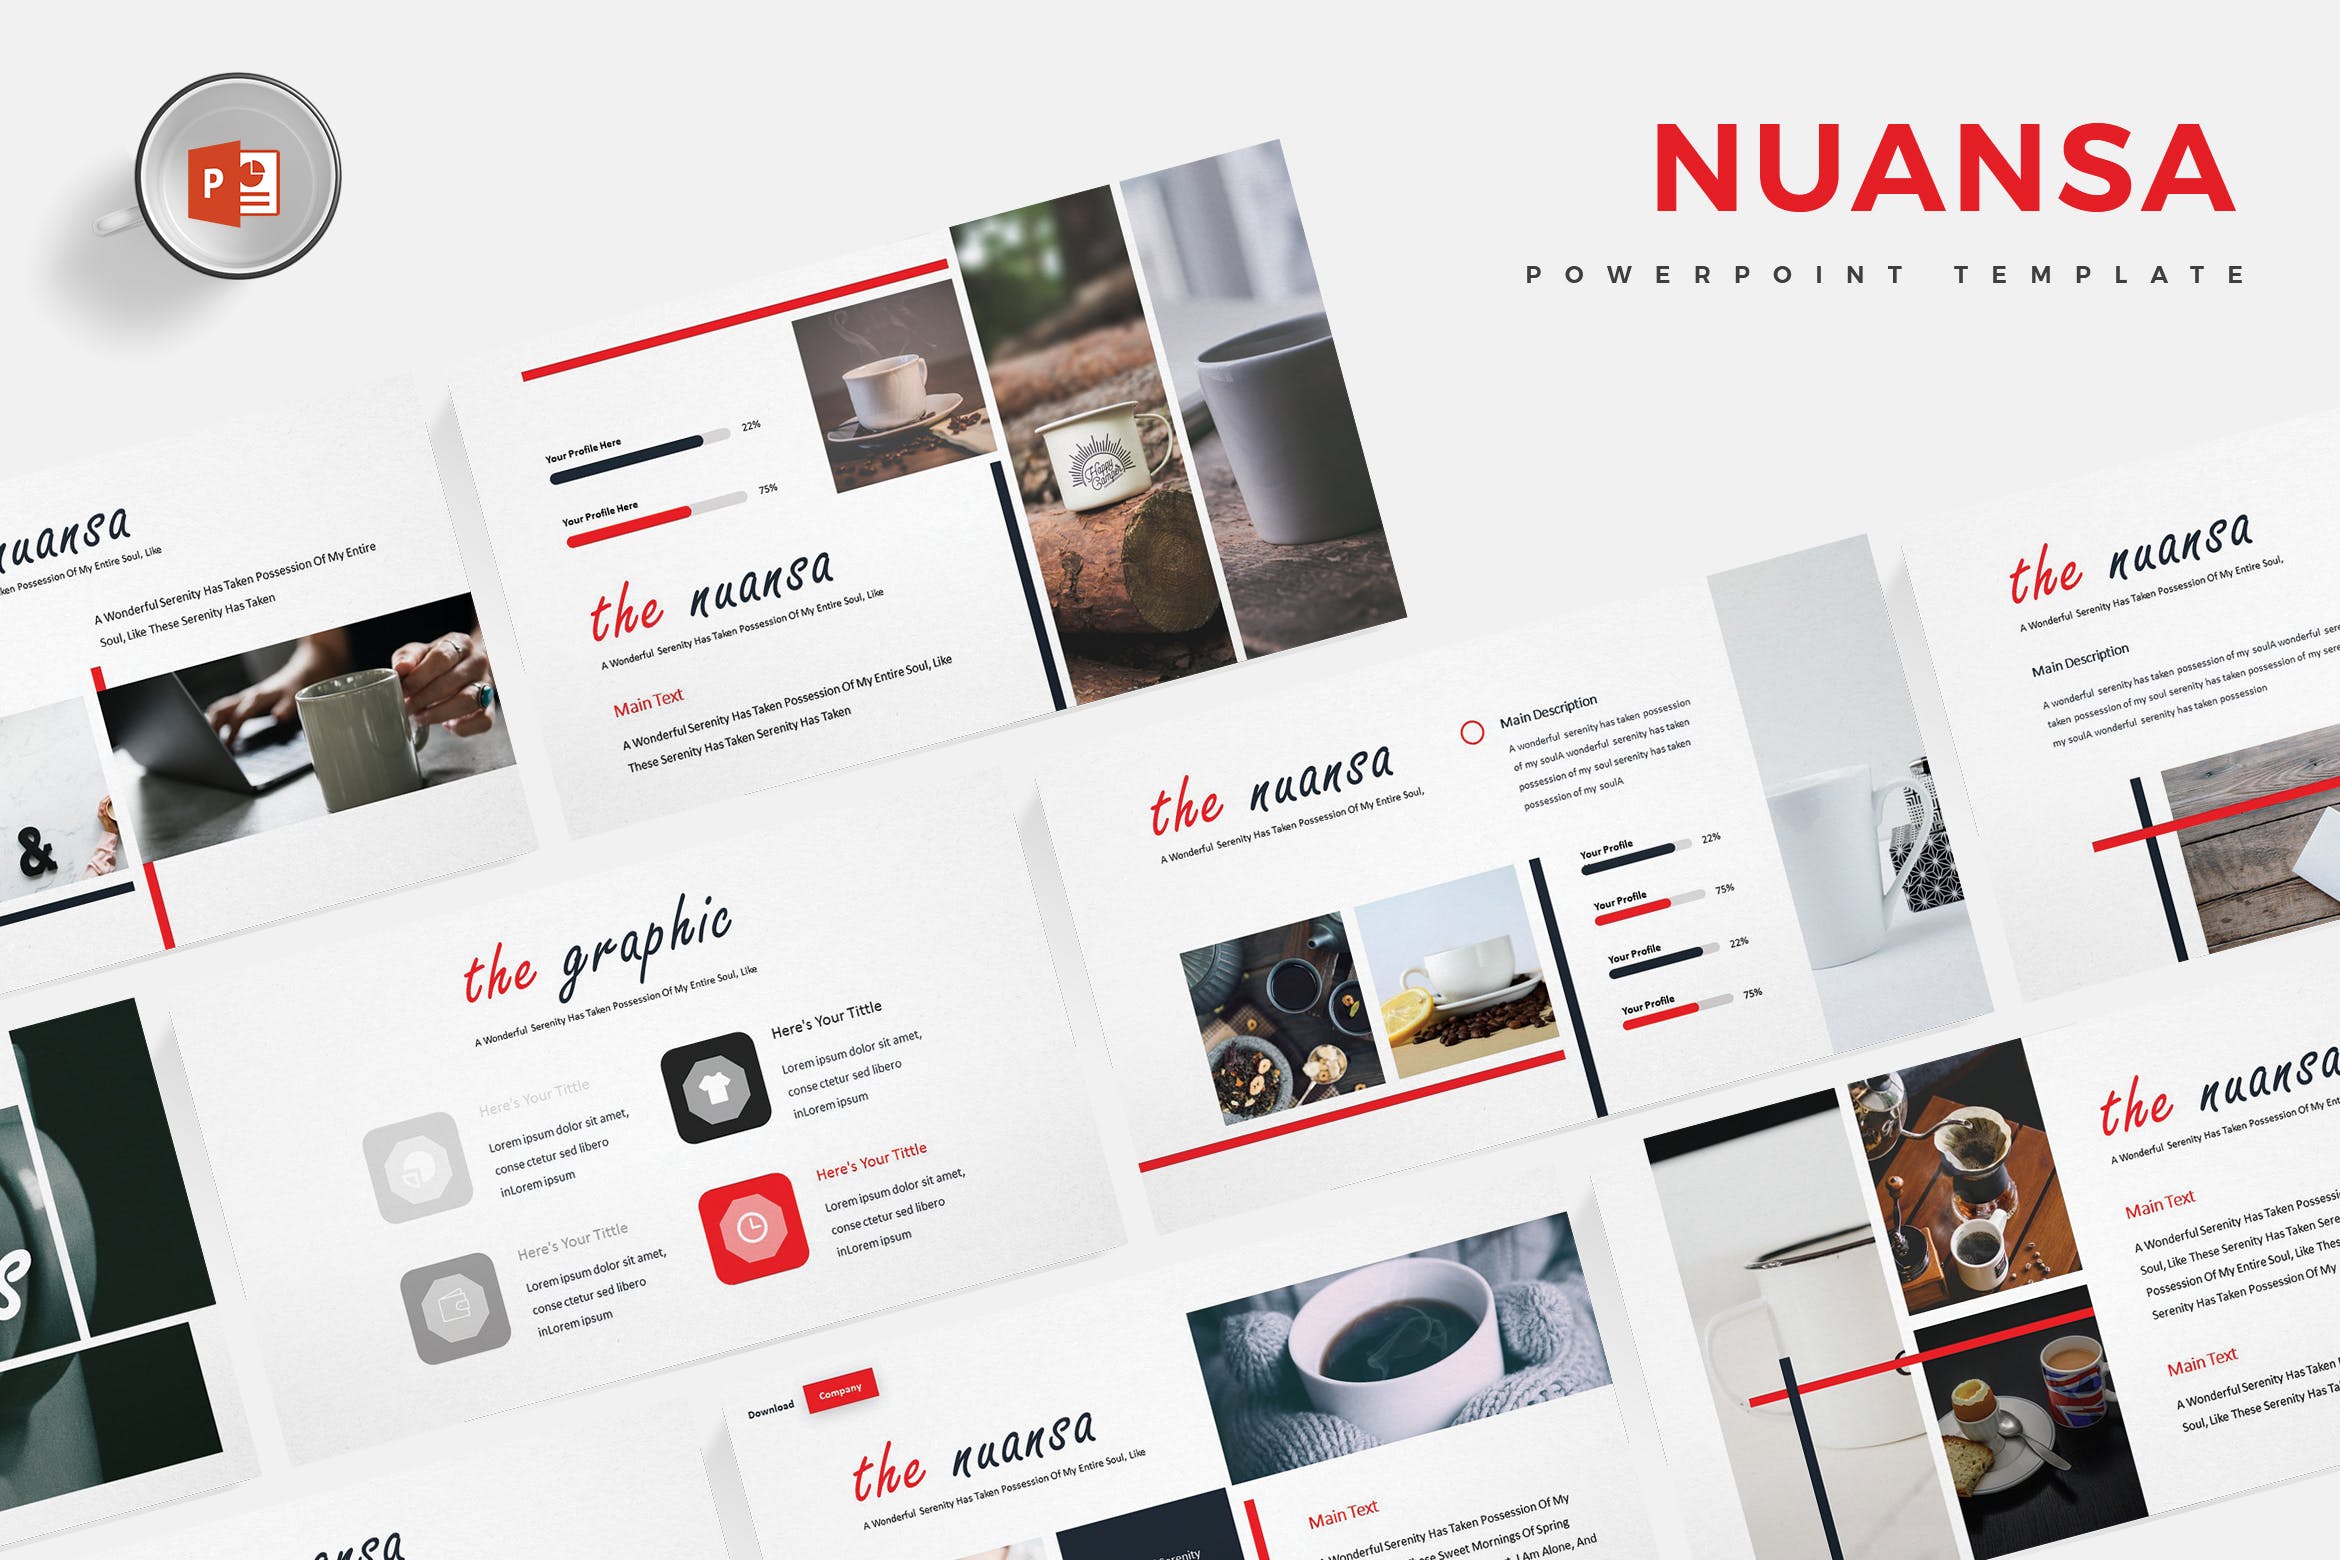 咖啡/咖啡厅品牌推广PPT设计模板 Nuansa – Powerpoint Template插图